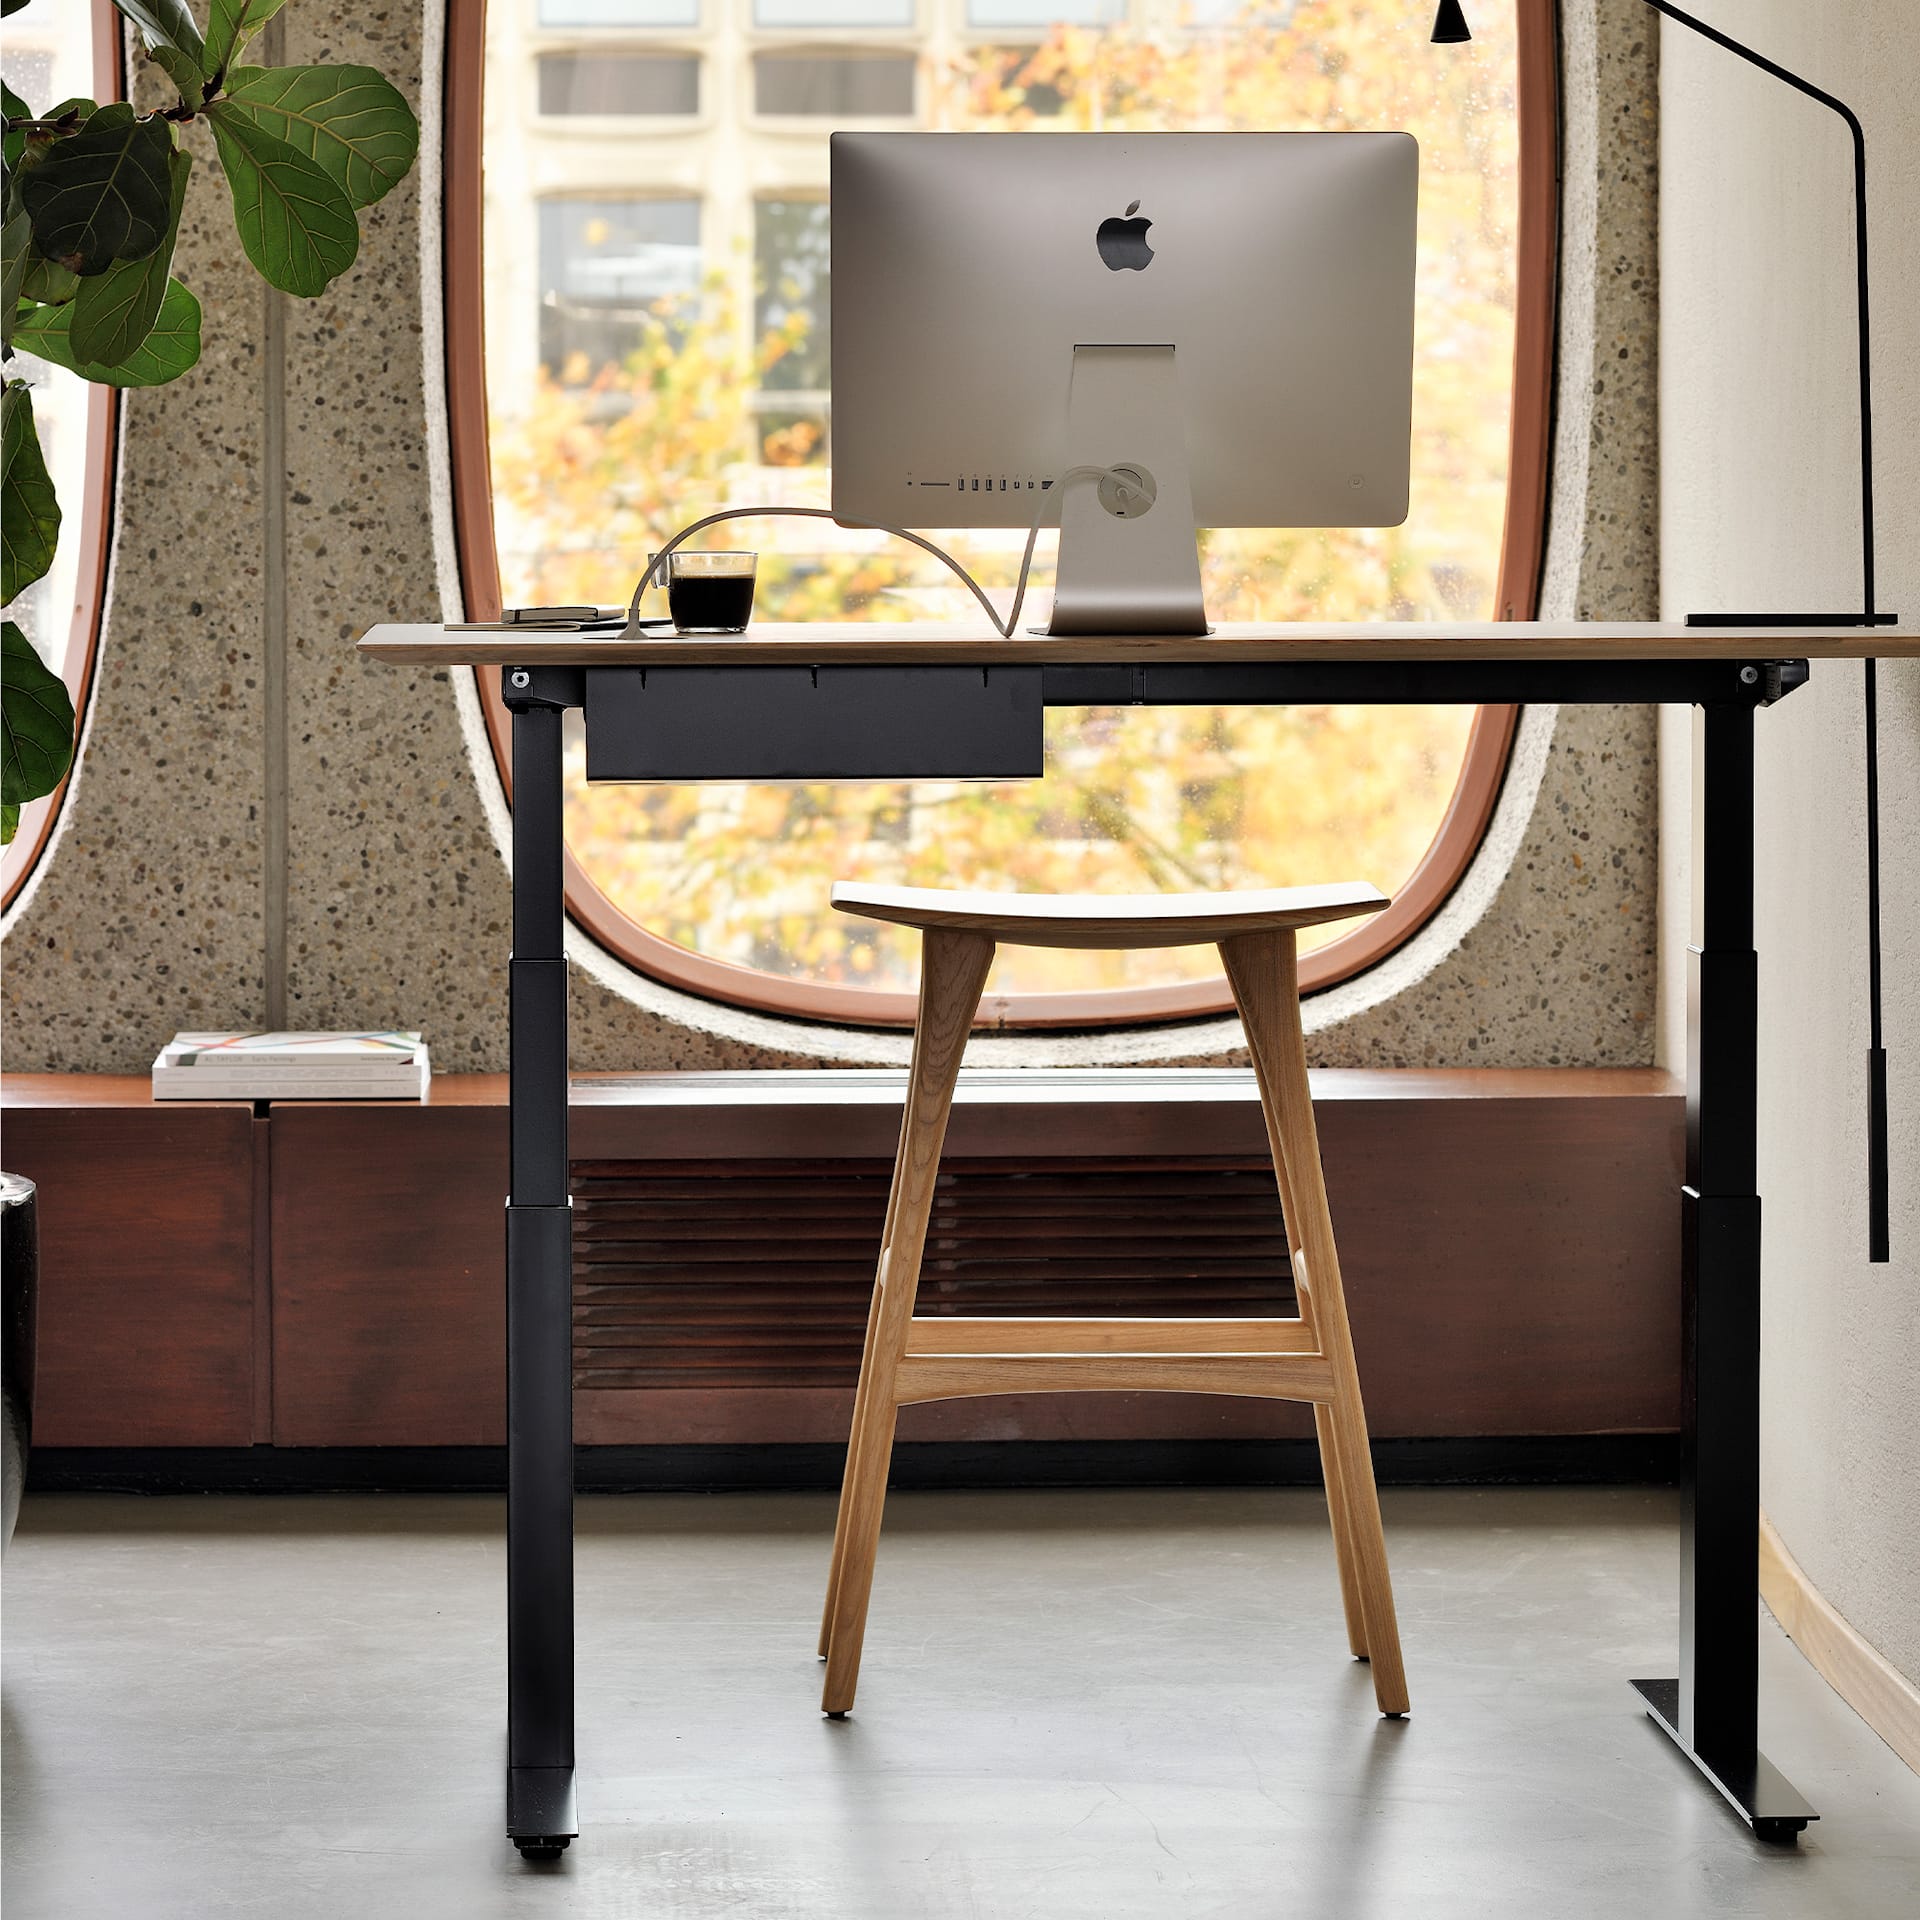 Bok Adjustable Desk Table Top 80 x 160 cm - Ethnicraft - NO GA